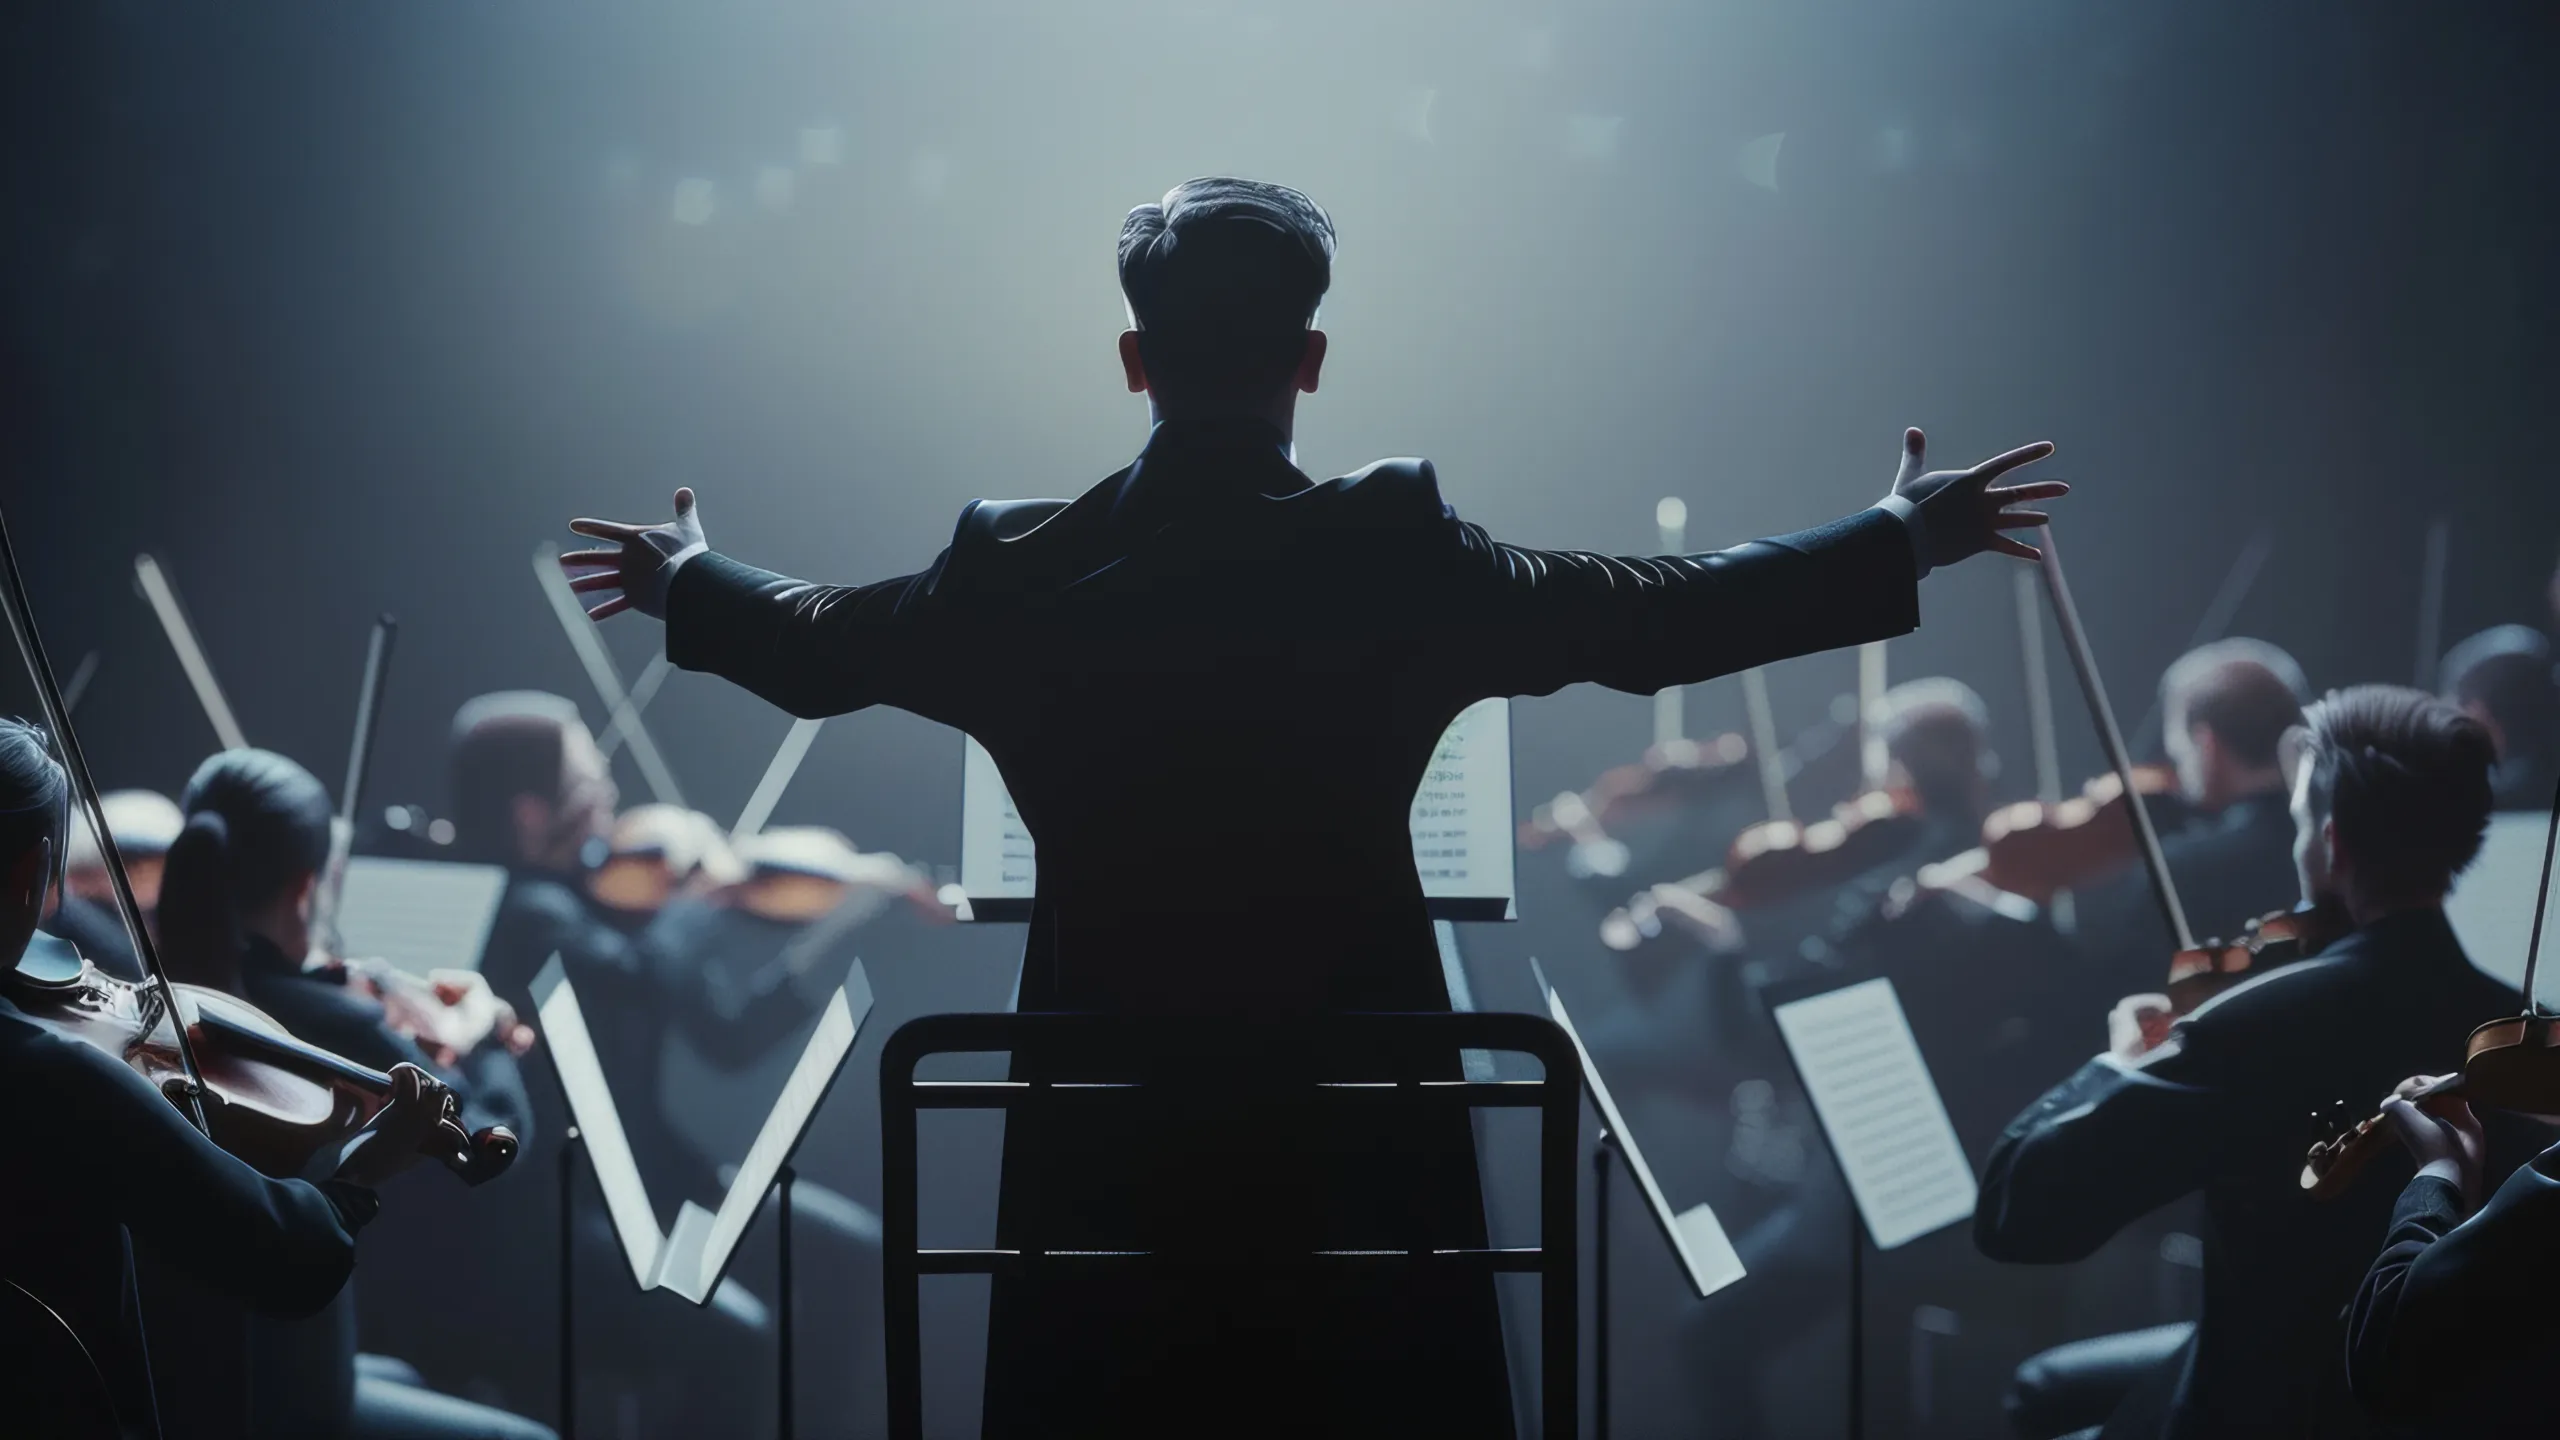 Ein charismatischer Dirigent steht mit ausgestreckten Armen vor einem Orchester und leitet Musiker, die Streichinstrumente in einer schwach beleuchteten, nebligen Umgebung spielen.